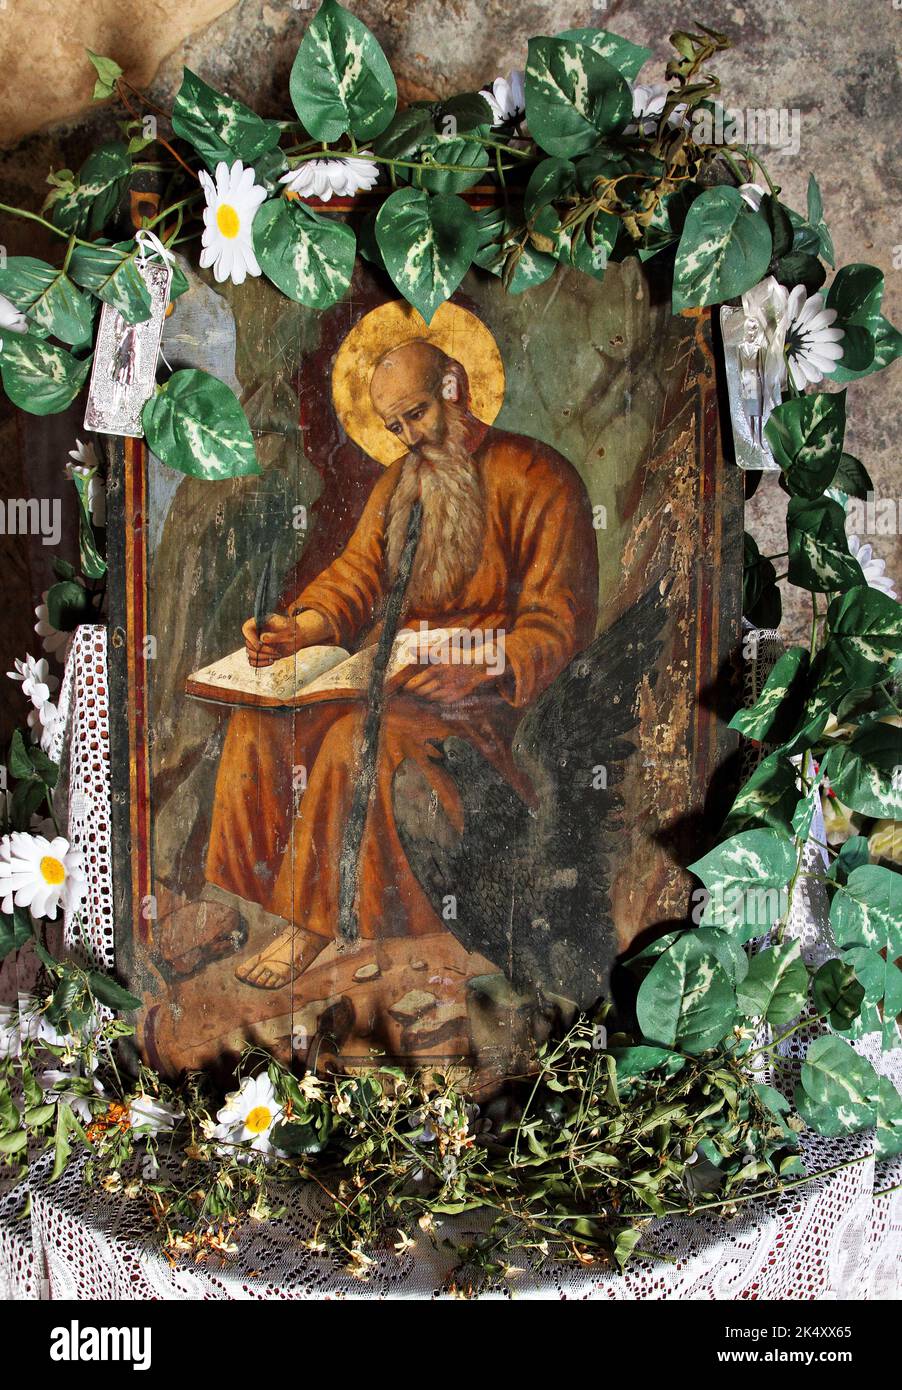 Giovanni l'evangelista scrive l'Apocalisse, come raffigurato in un'icona ortodossa greca, in un monastero ortodosso nell'isola di Creta, Grecia, Europa Foto Stock